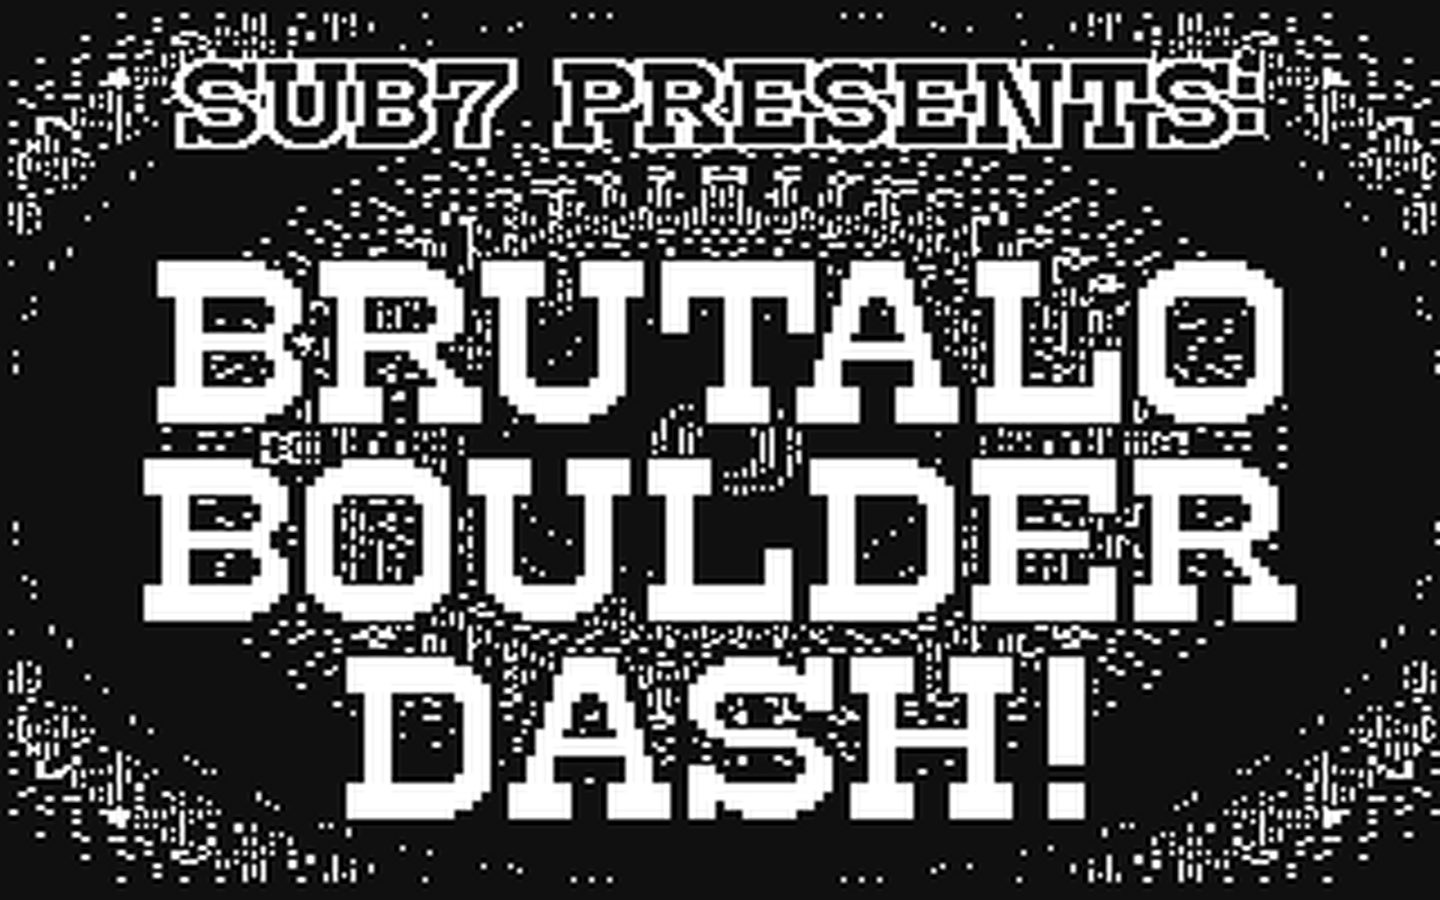 C64 GameBase Brutalo_Boulder_Dash (Not_Published)